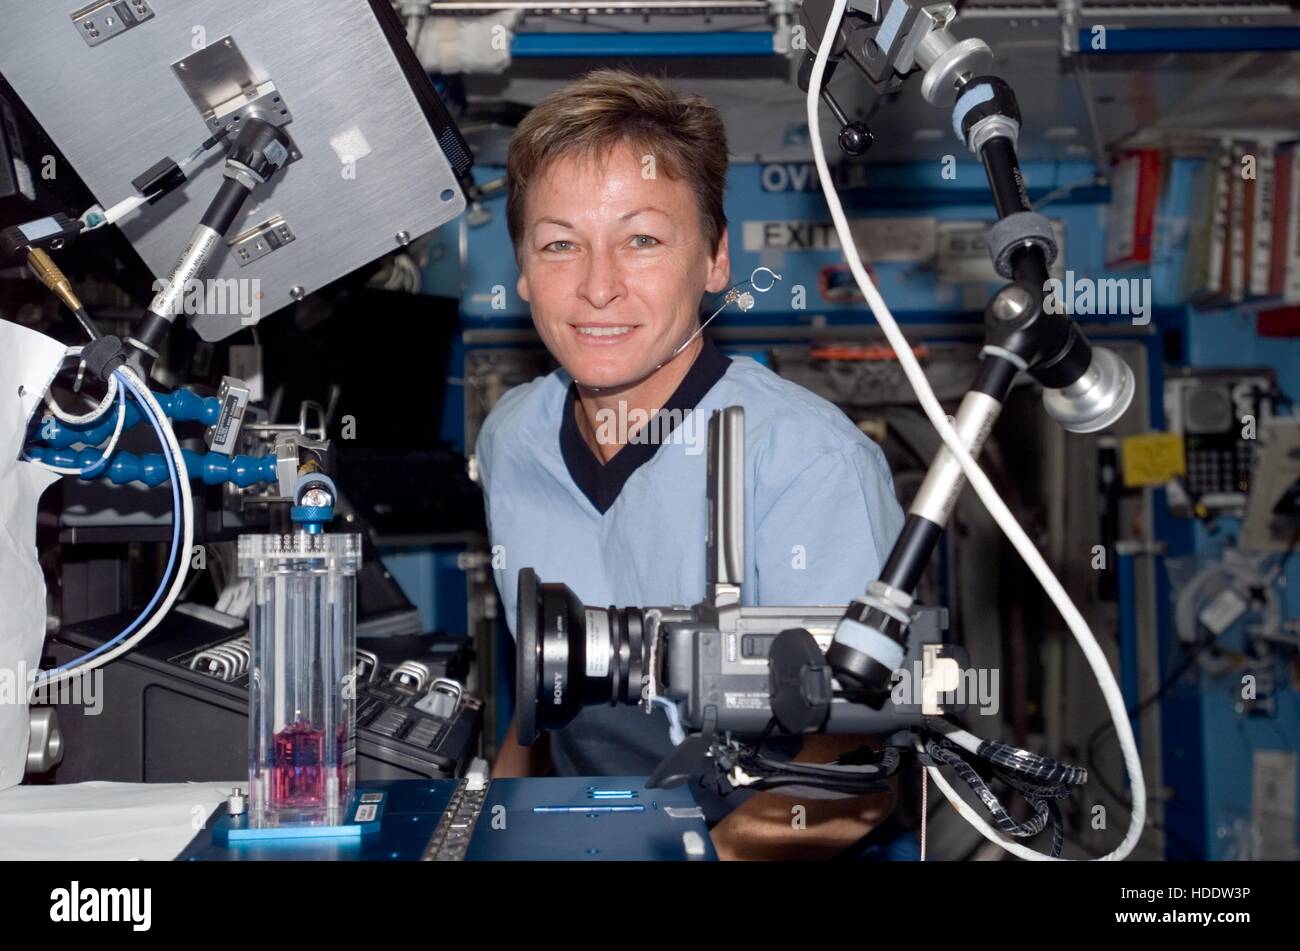 La NASA Stazione Spaziale Internazionale Expedition 16 astronauta Peggy Whitson esegue un esperimento nel laboratorio Destiny Ottobre 22, 2007 mentre in orbita intorno alla terra. Foto Stock